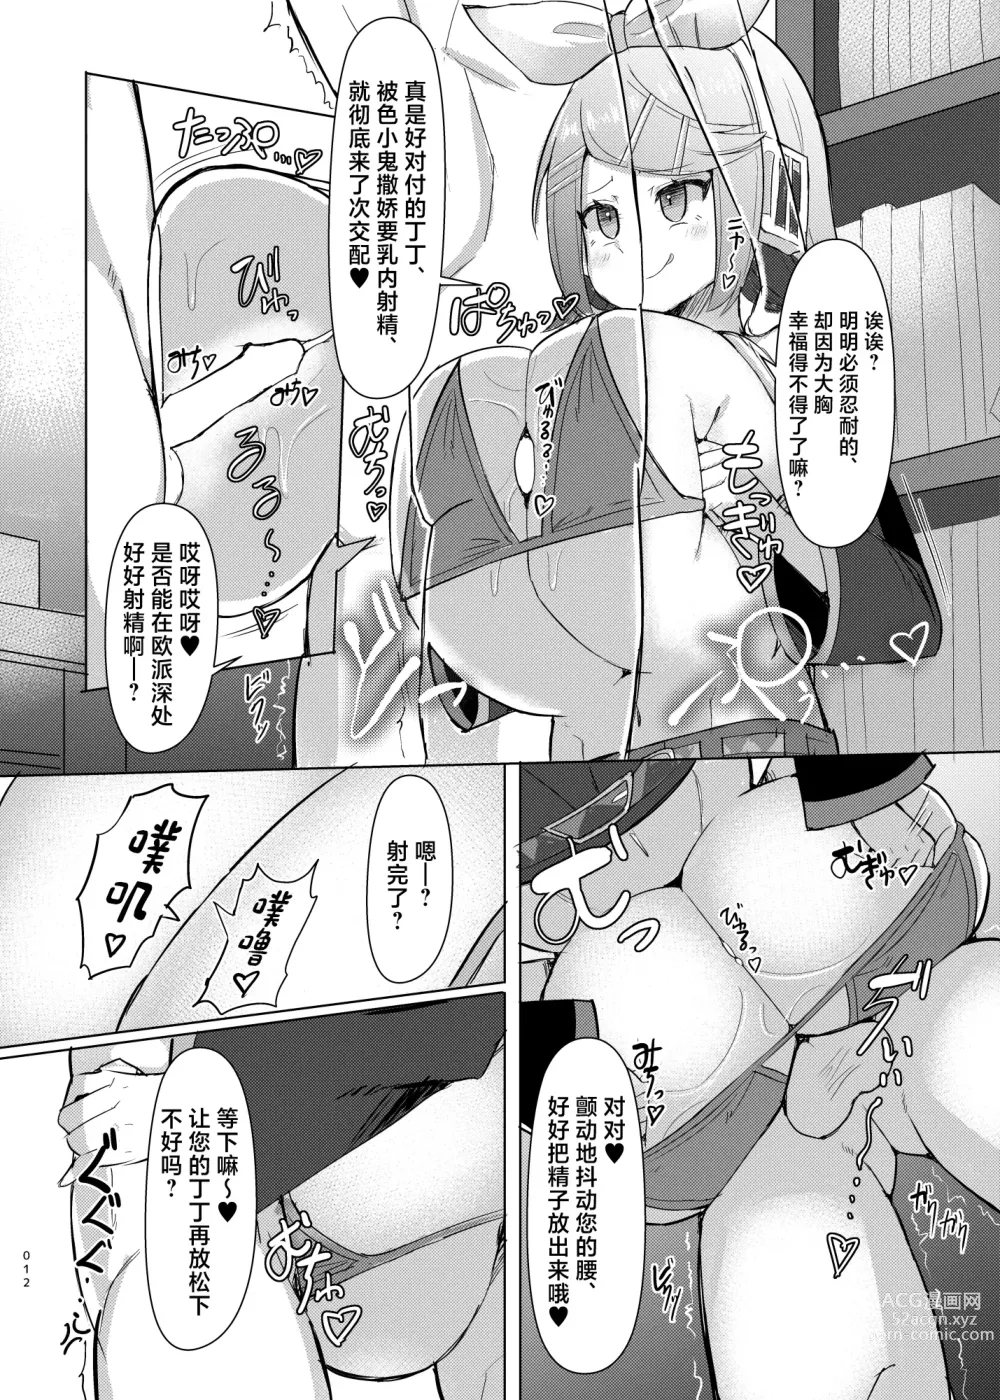 Page 13 of doujinshi Remoniro no Koakuma